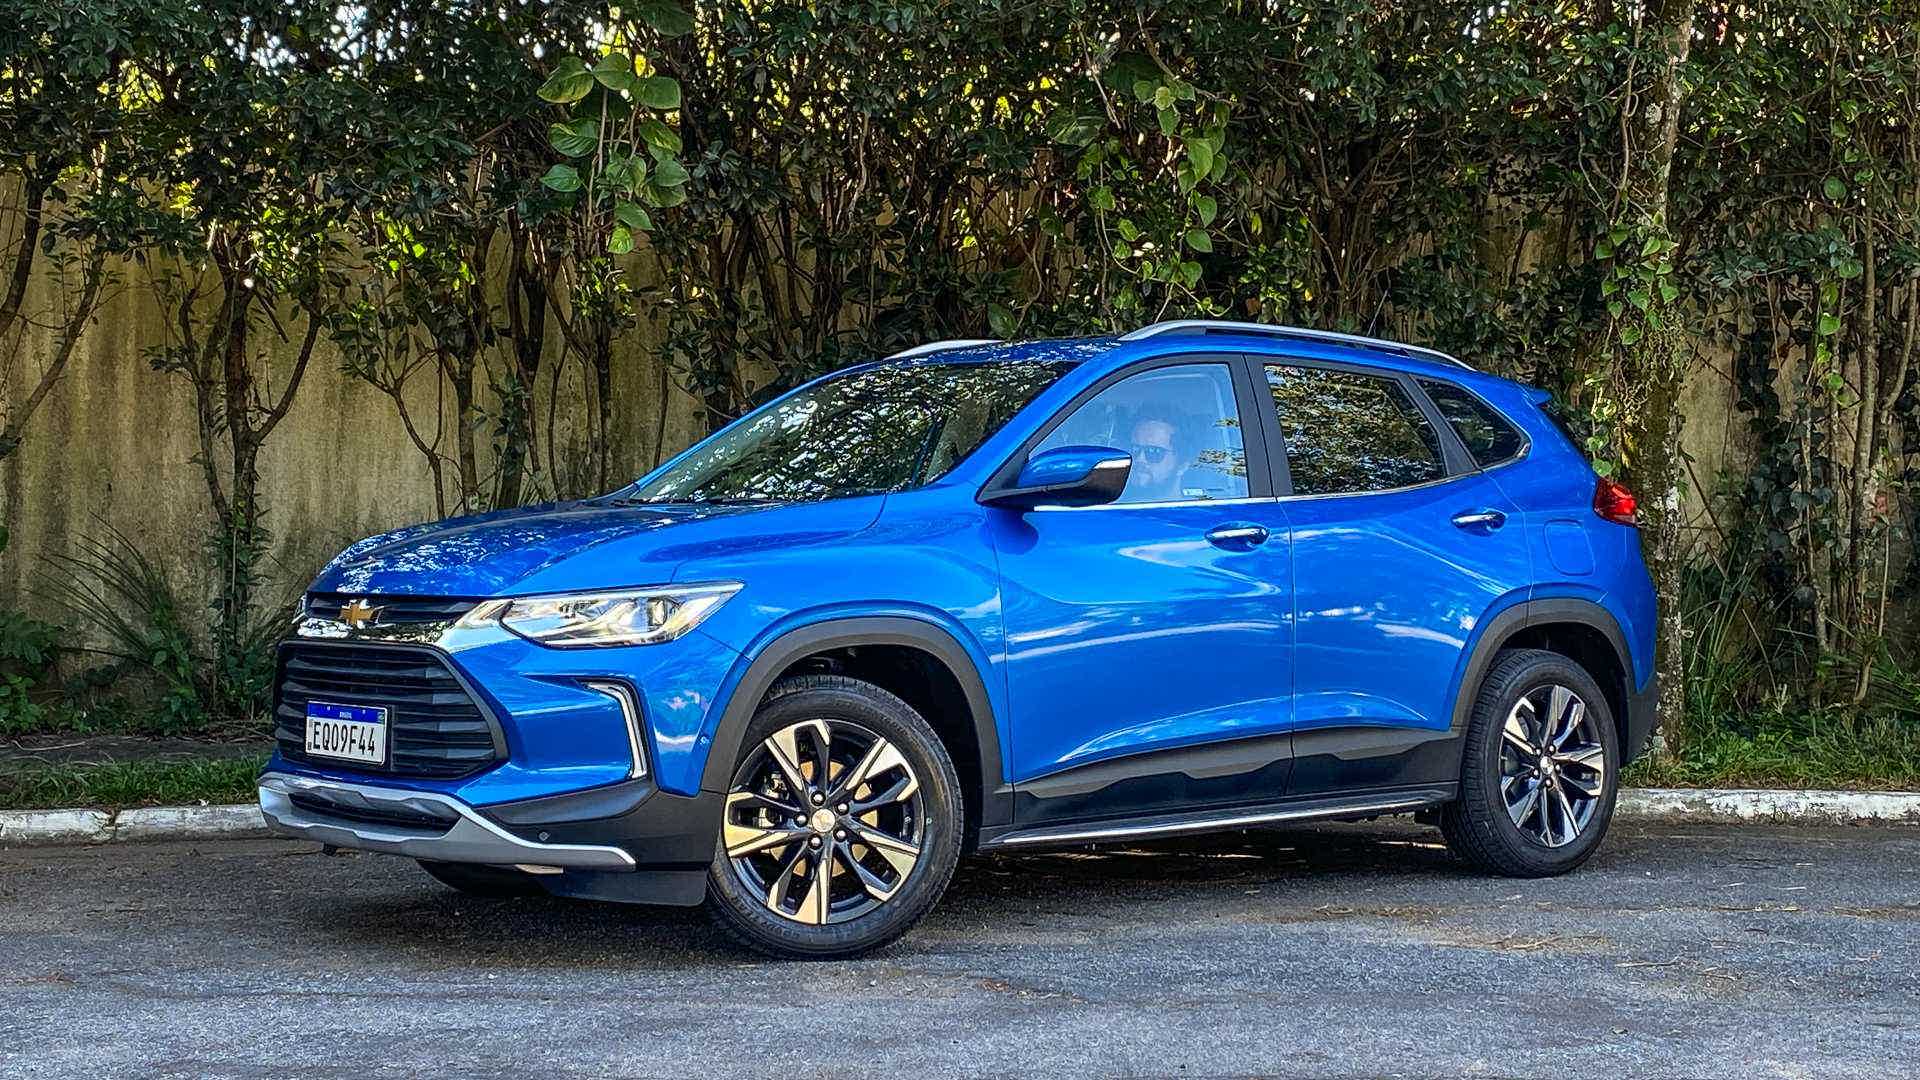 Chevrolet Tracker 2021 é lindo